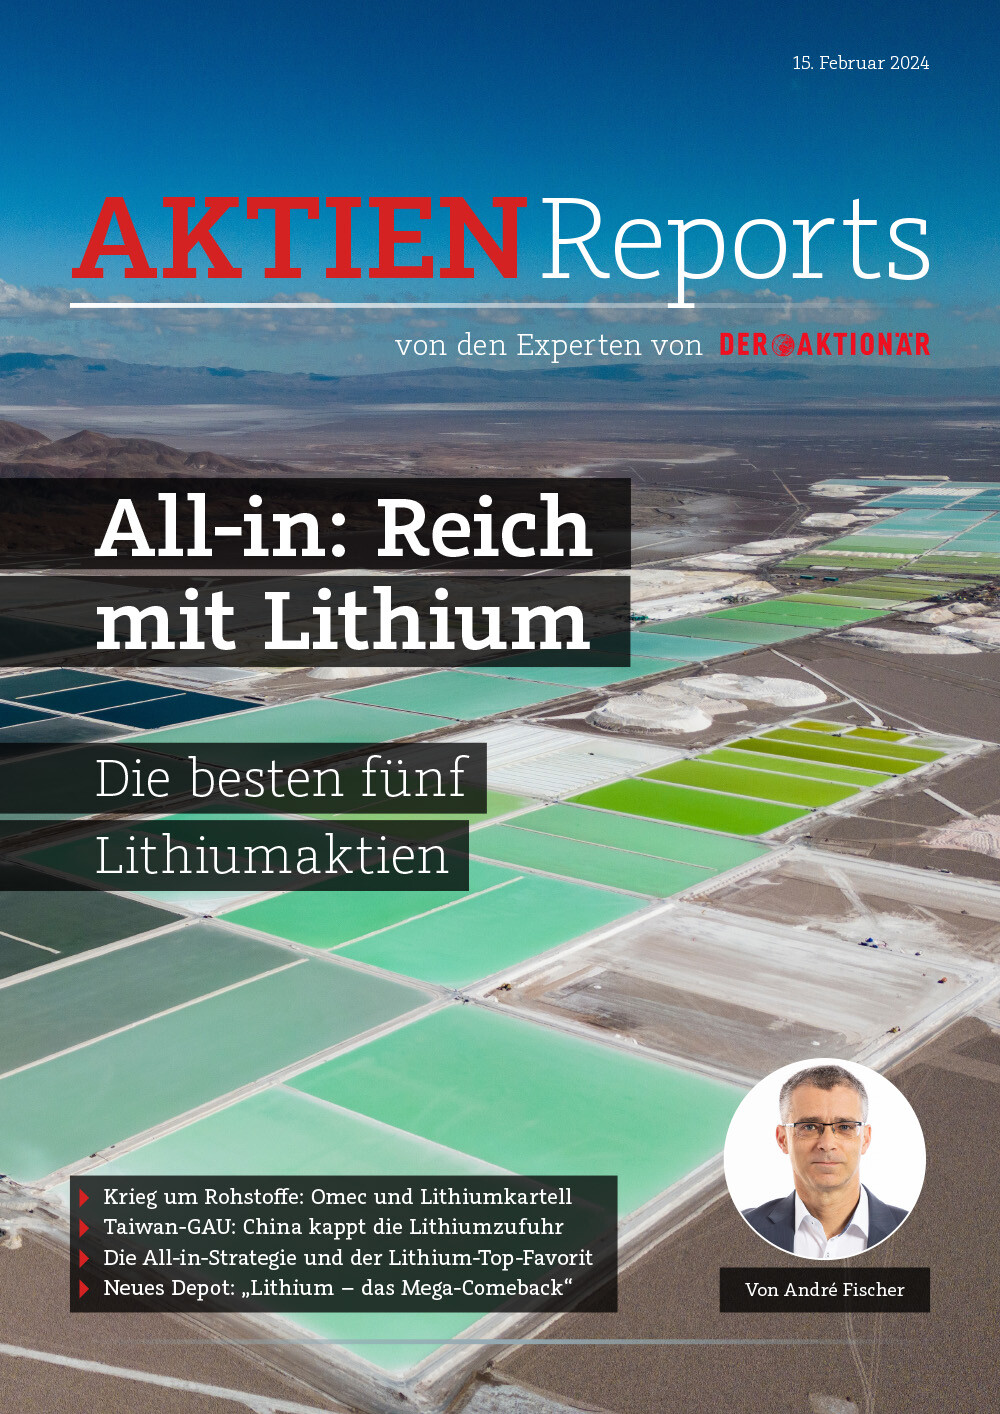 Nun hat André Fischer in seinem neuen 13-seitigen Aktien-Report „All-in: Reich mit Lithium“ den nächsten potenziellen Kursvervielfacher identifiziert.